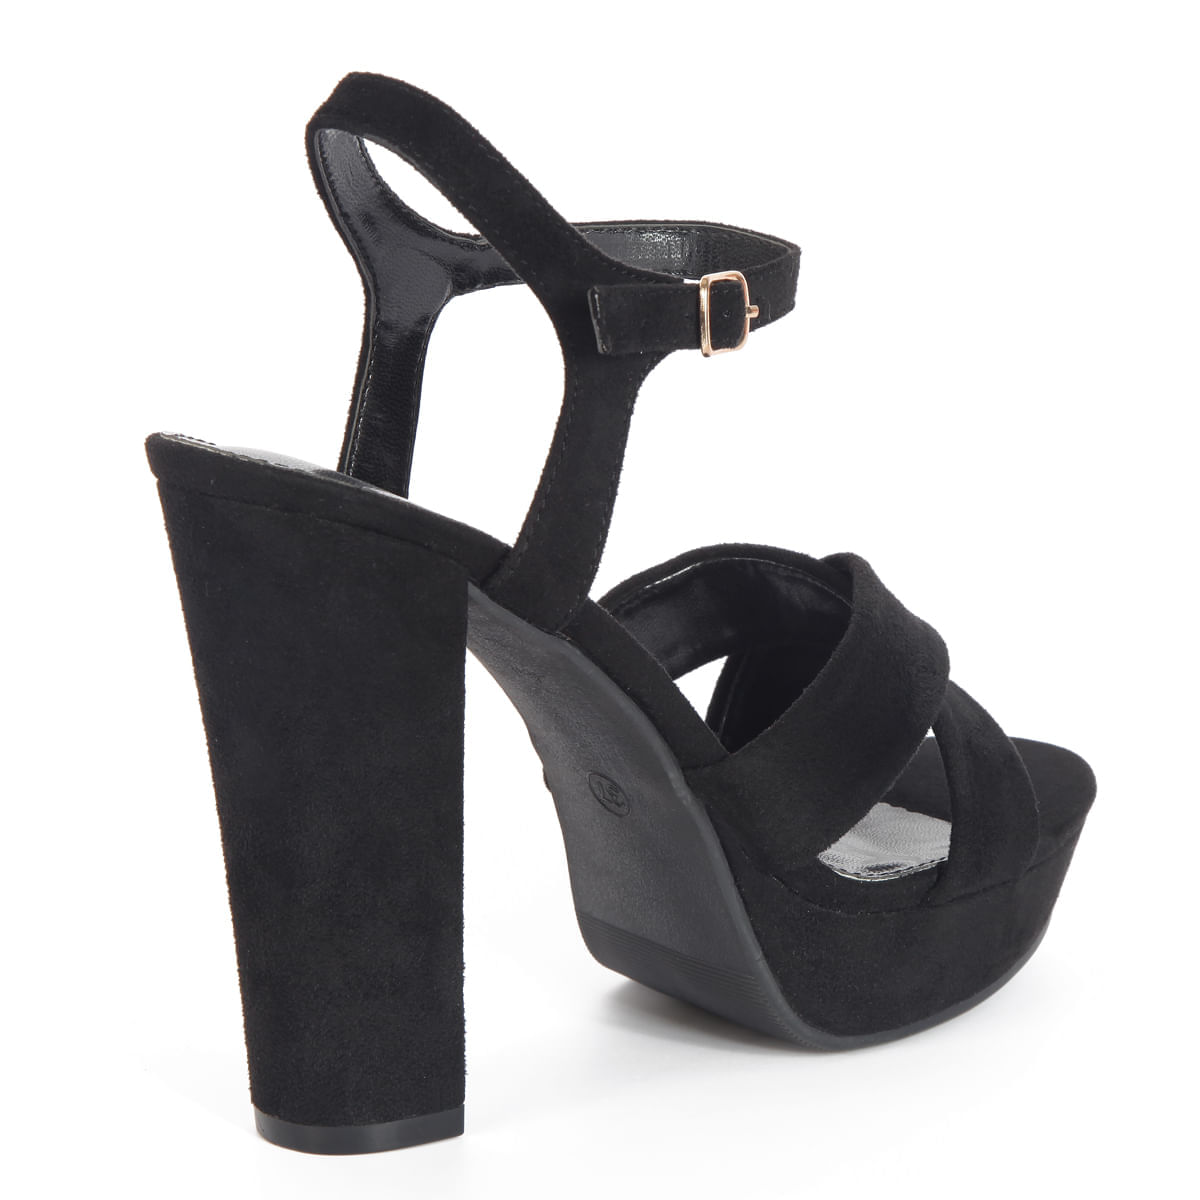 Zapatillas casual de vestir mujer planas 2CD-2054 negro